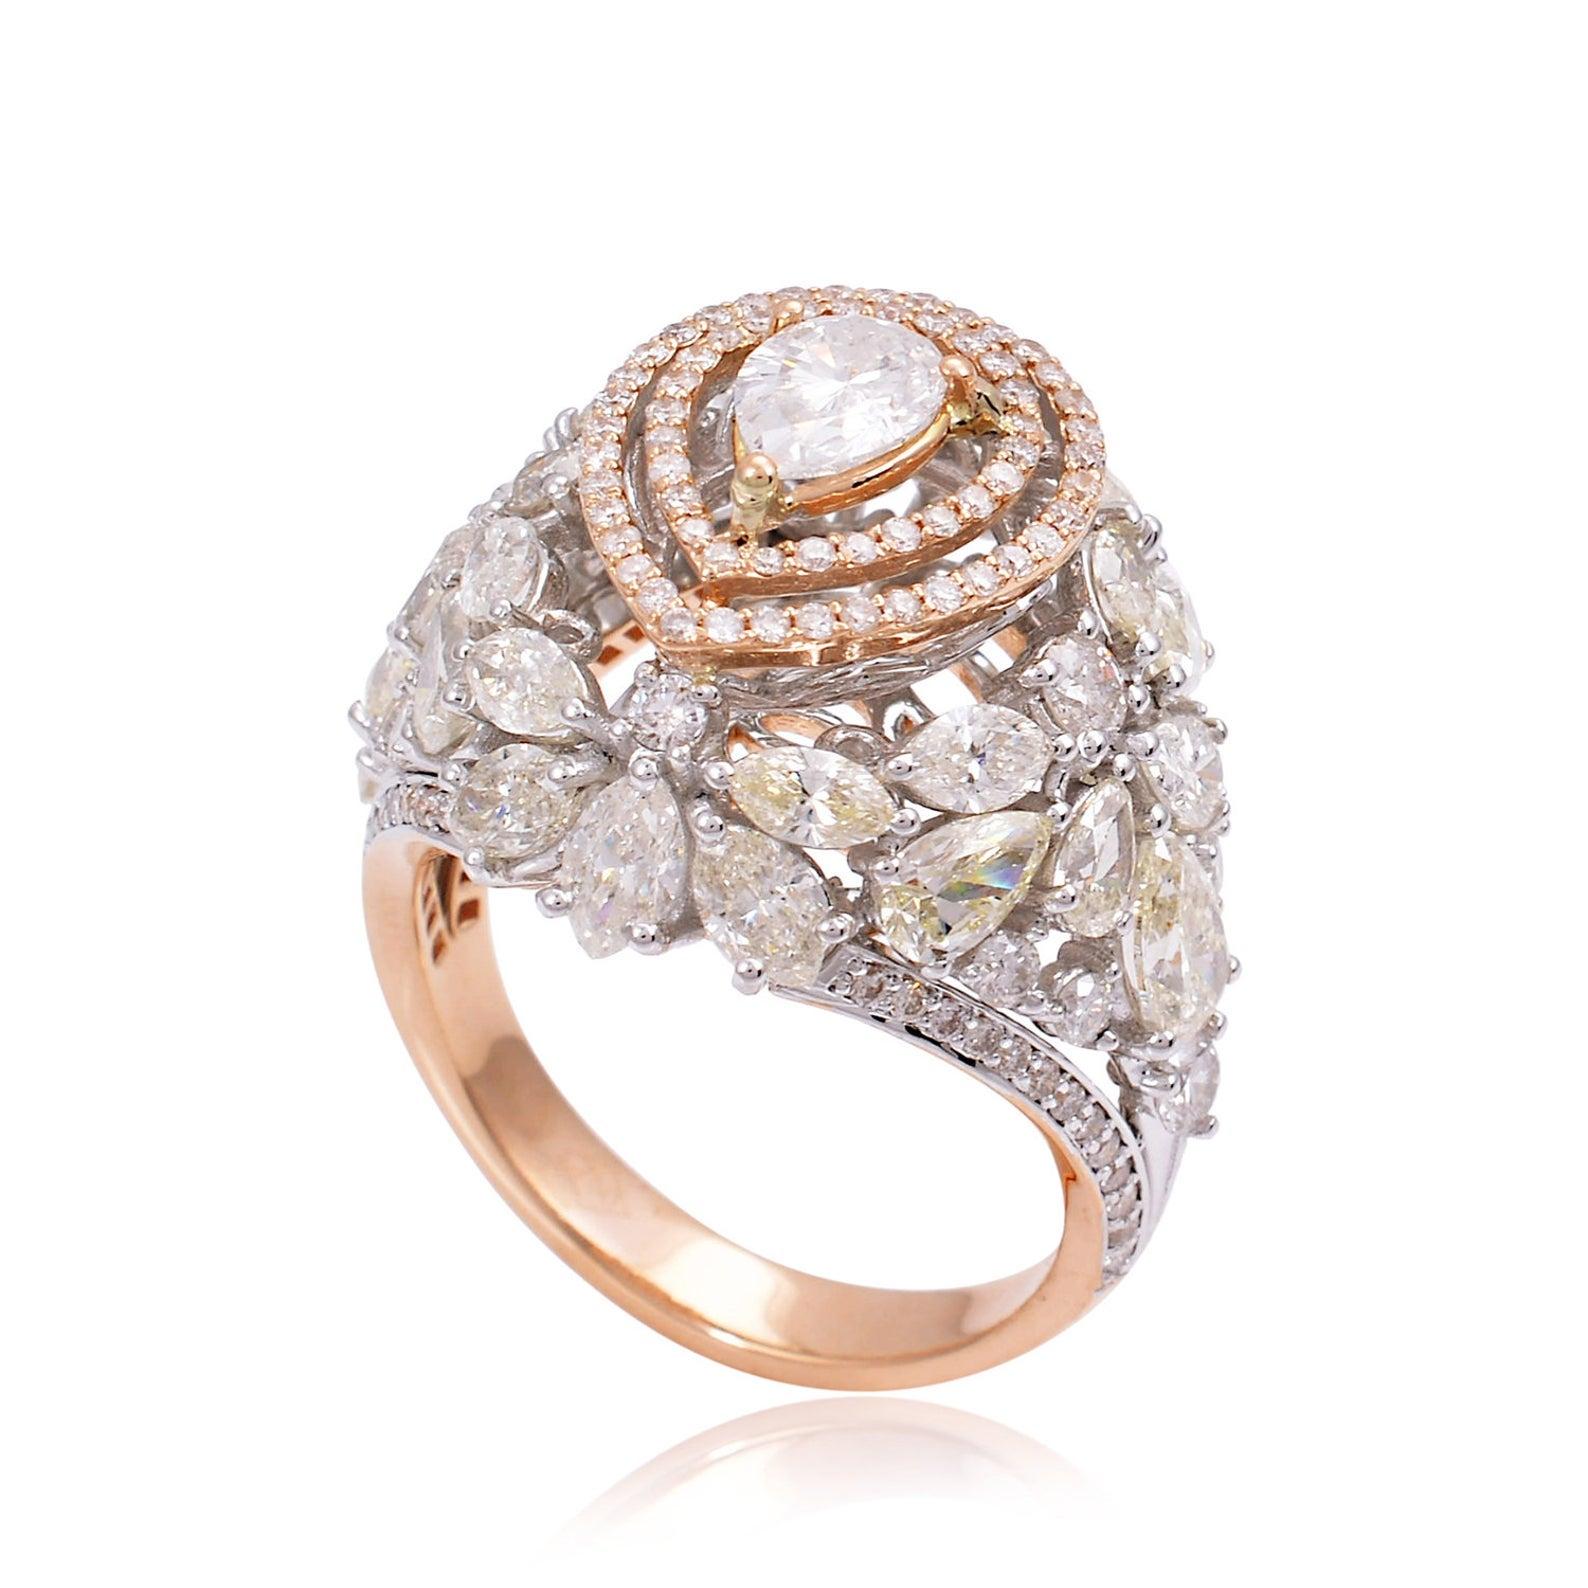 For Sale:  5.0 Carat Diamond 18 Karat Gold Ring 4